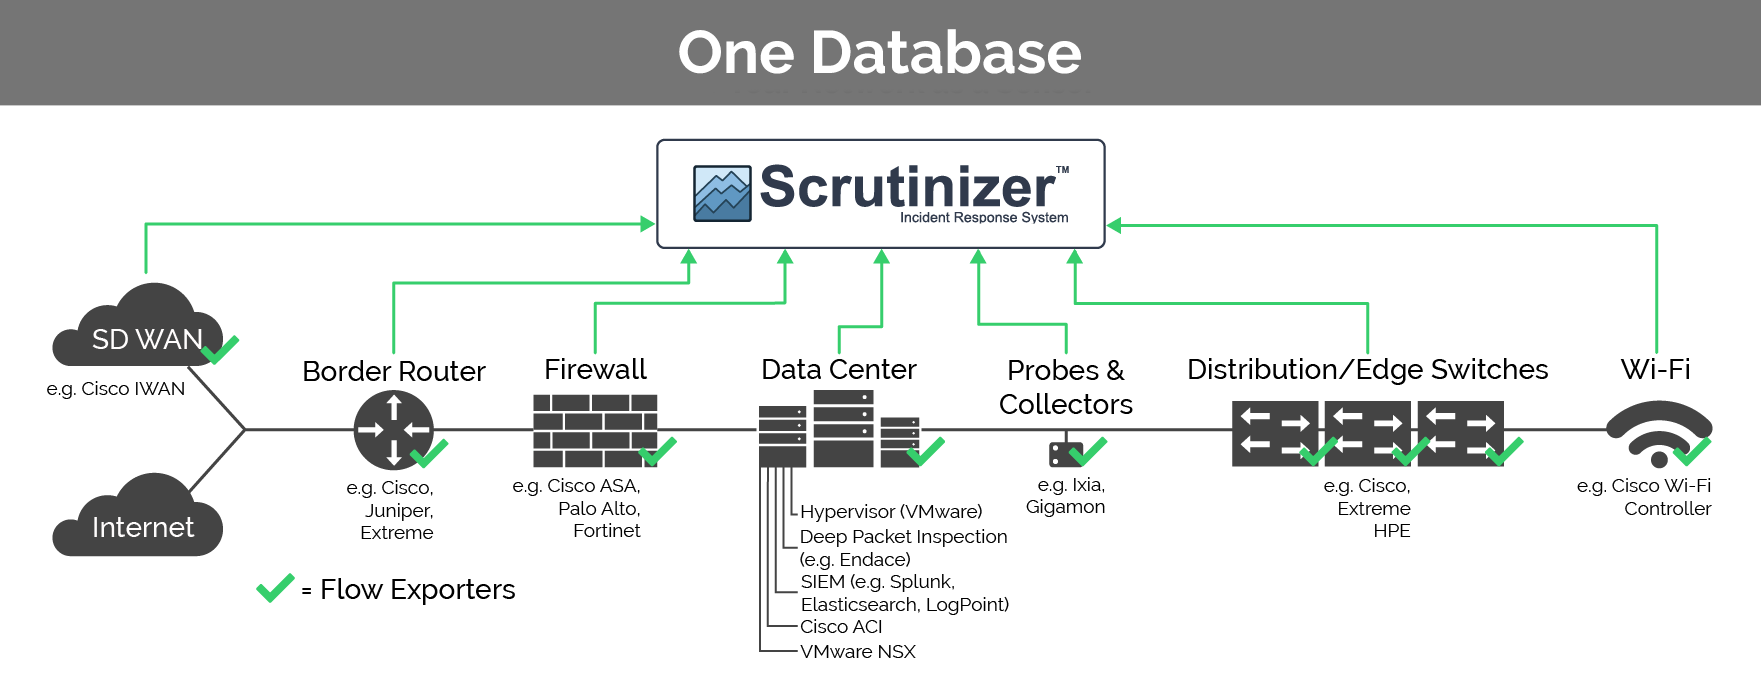 One Database